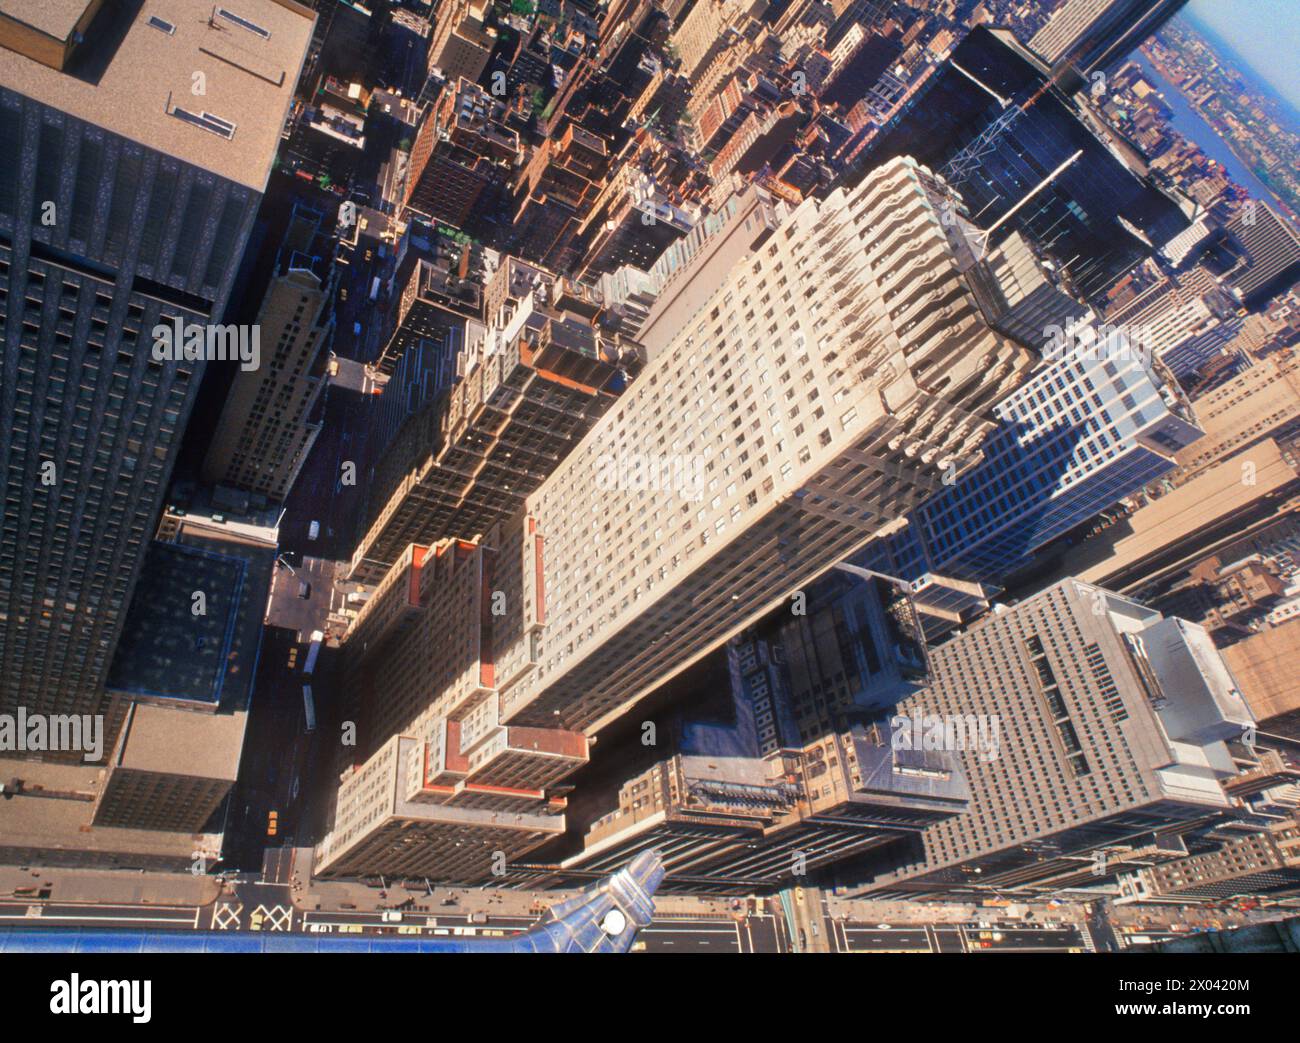 Vue aérienne sur le toit depuis le Chrysler Building. Gargouille. Midtown Manhattan vu d'en haut. Gratte-ciel New York, États-Unis. Banque D'Images